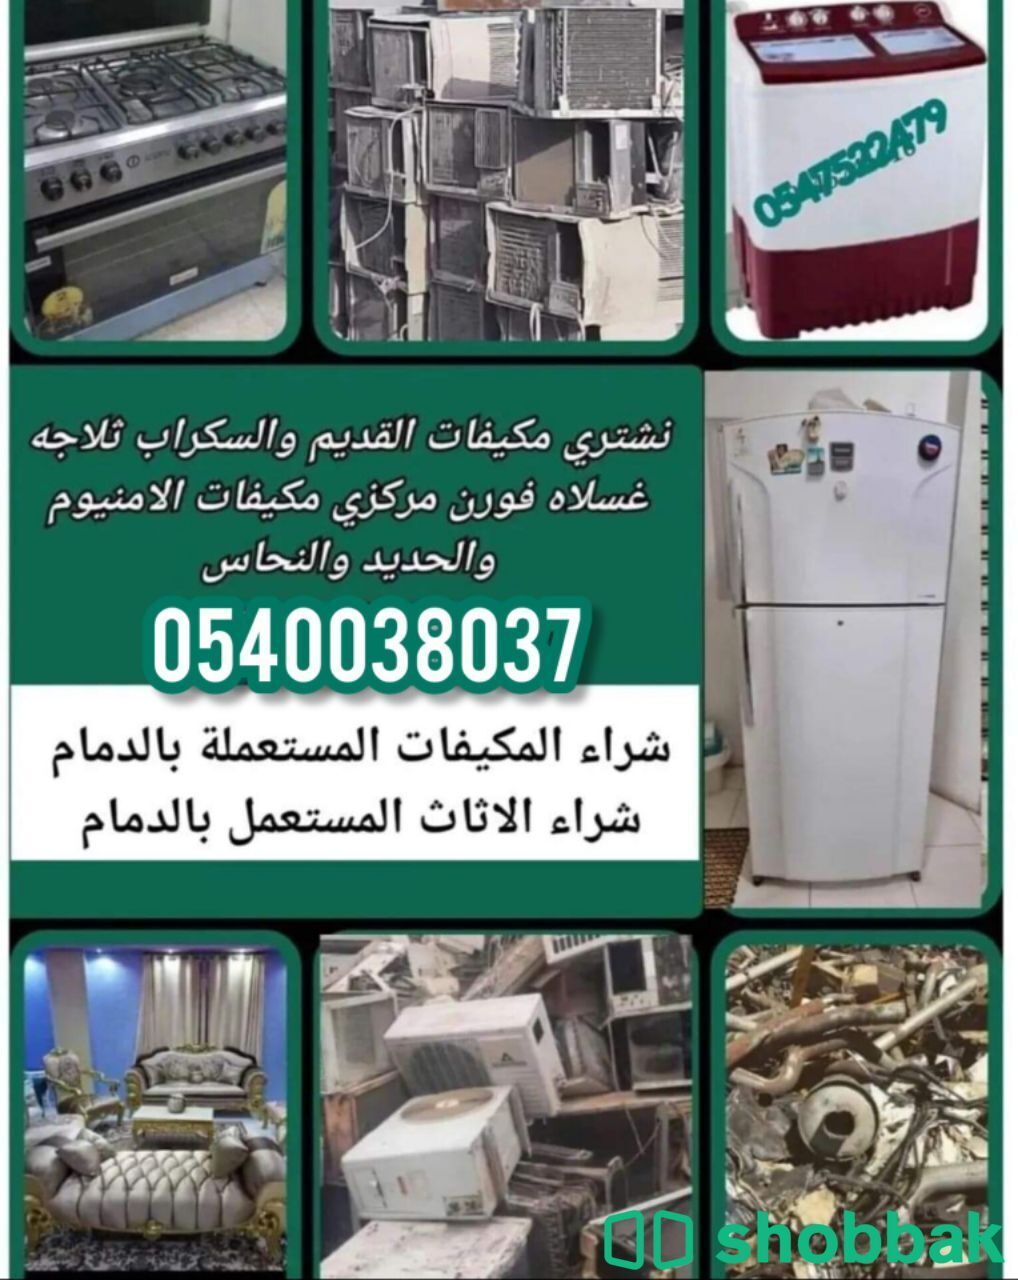 شراء مكيفات مستعملةالقطيف الدمام 0540038037 Shobbak Saudi Arabia